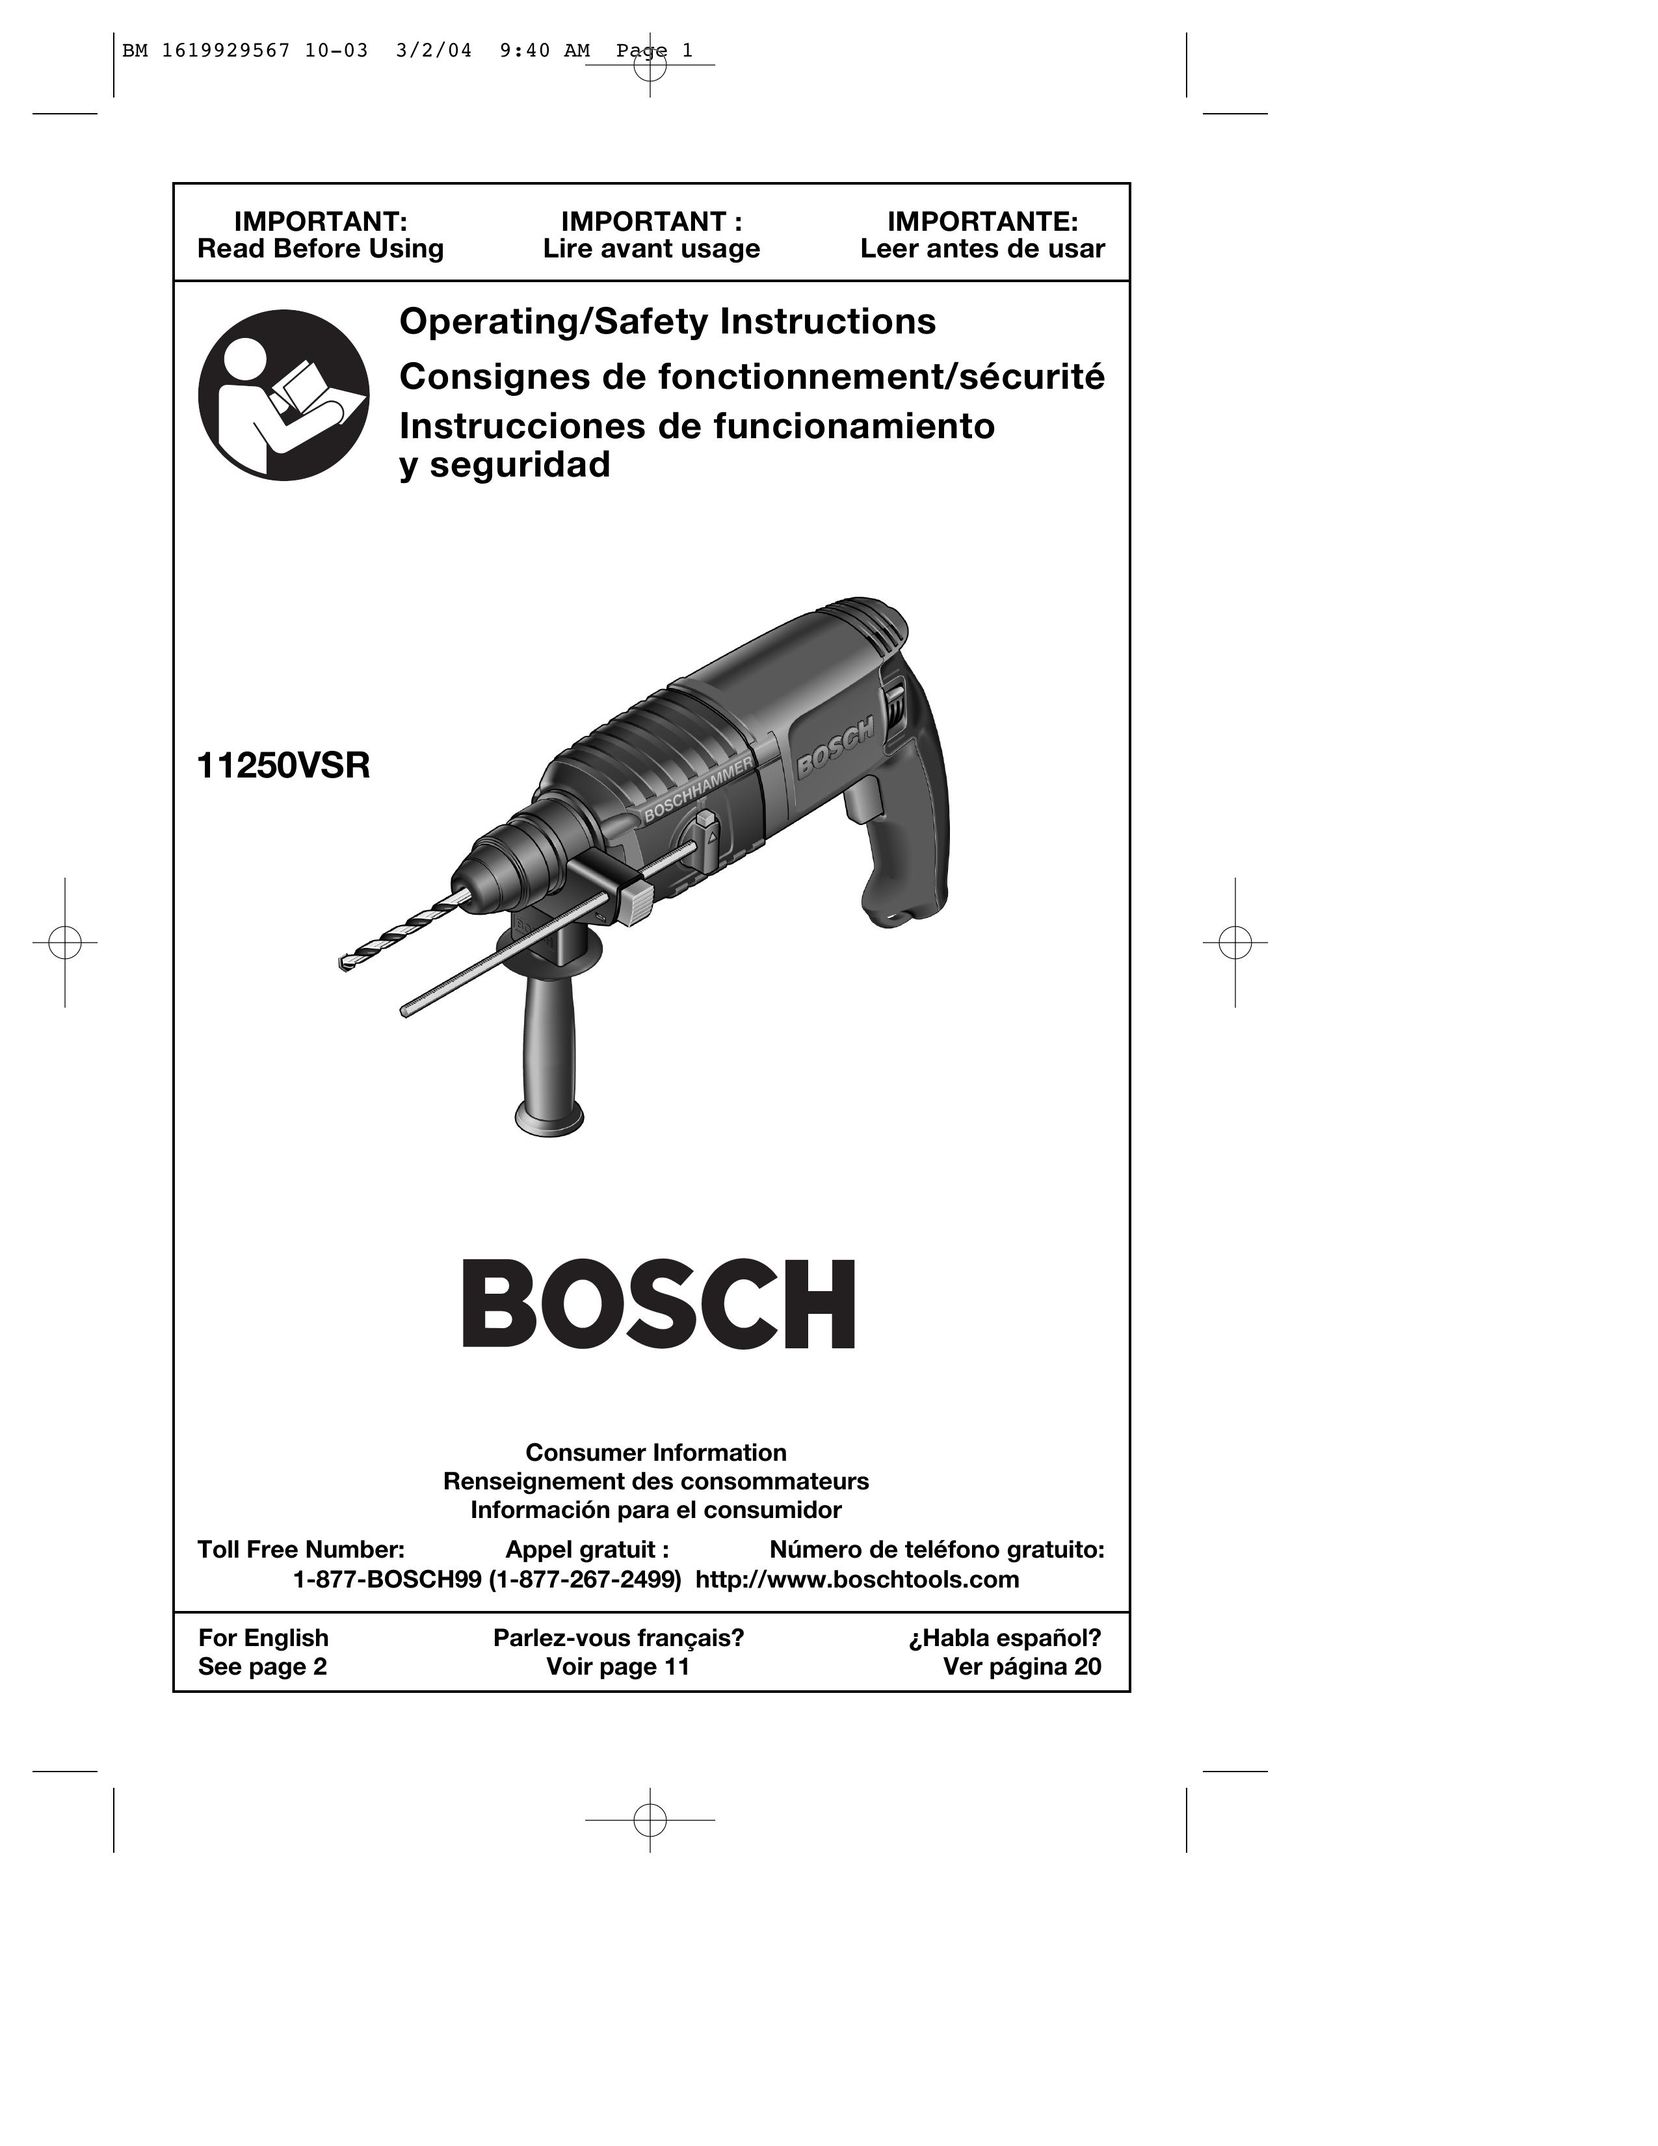 Bosch Power Tools 11250VSRD Power Hammer User Manual